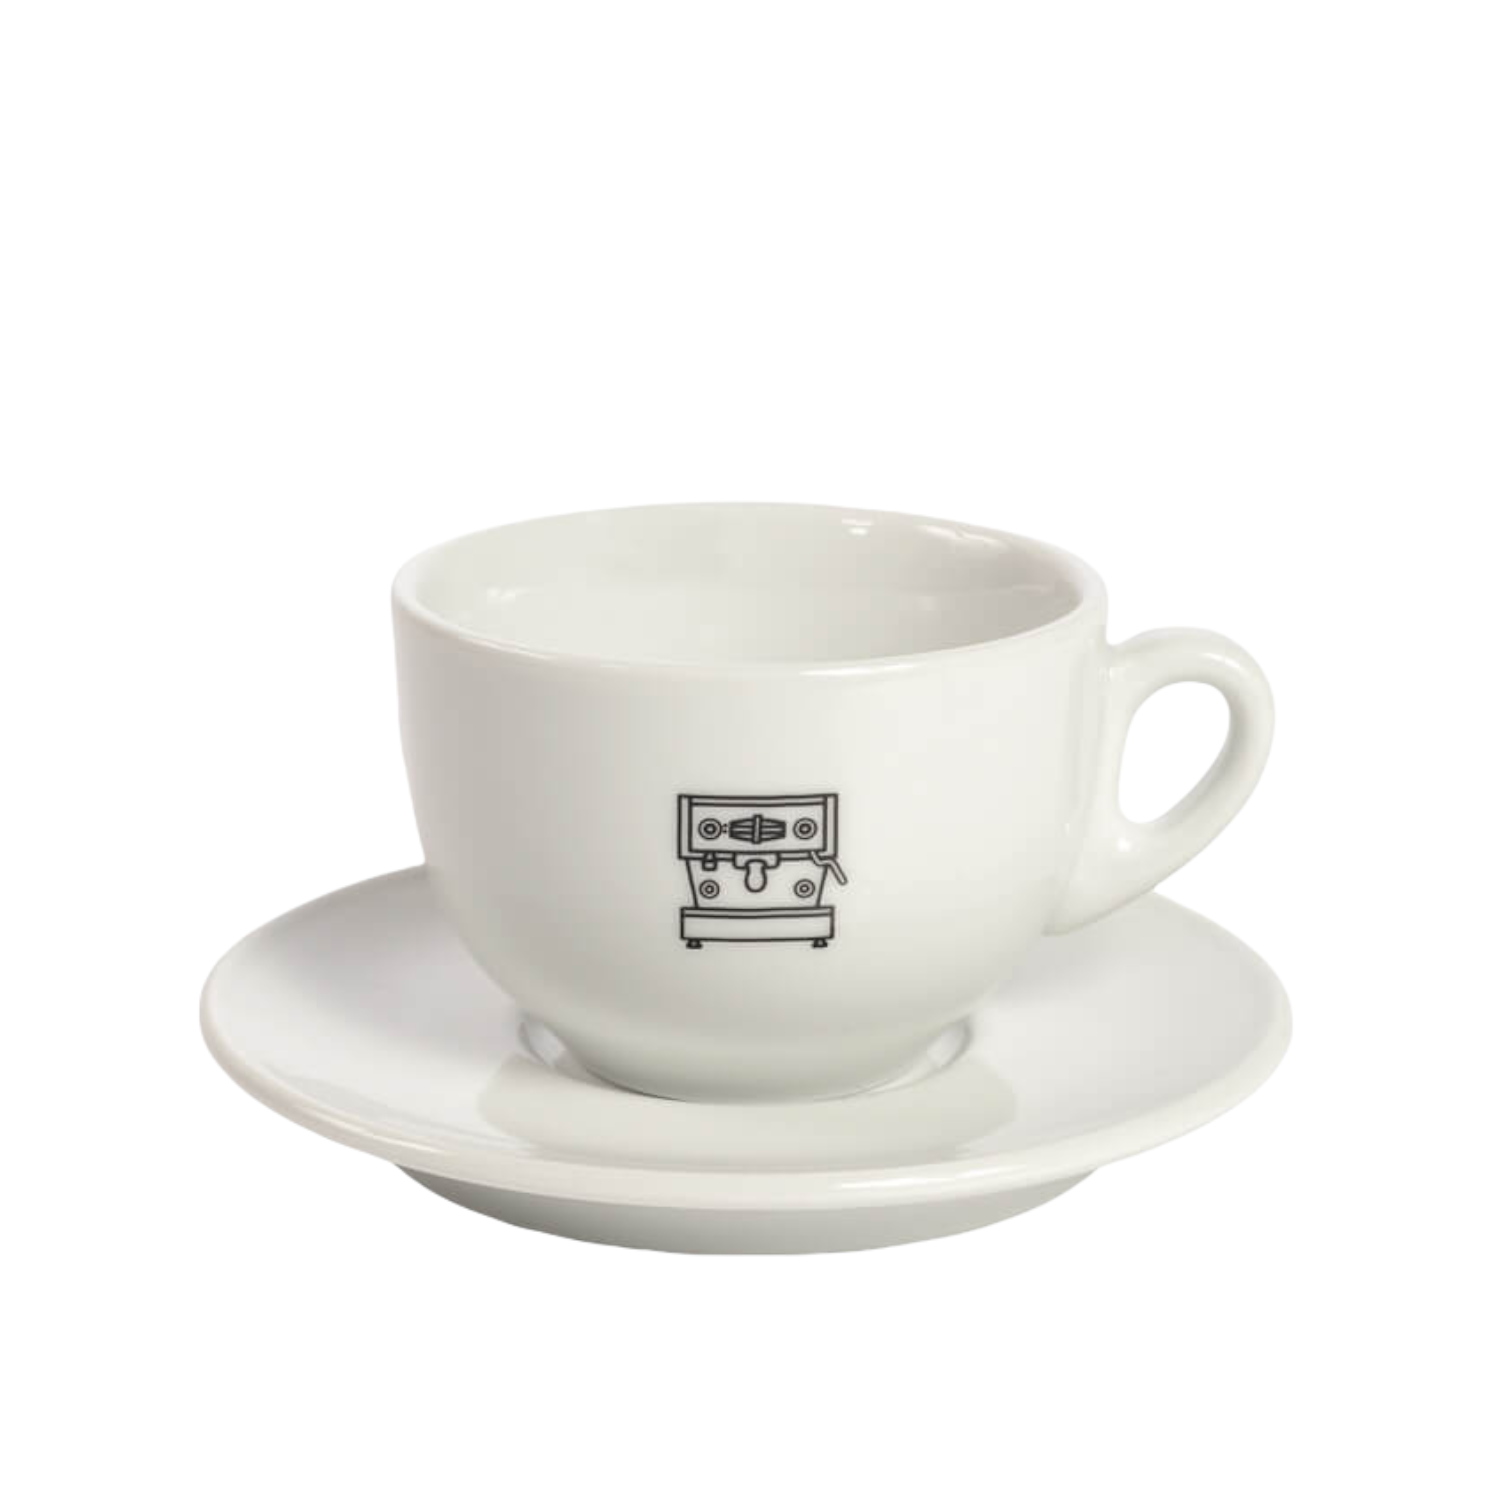 Linea Mini Cappuccino Cup and saucer by La Marzocco